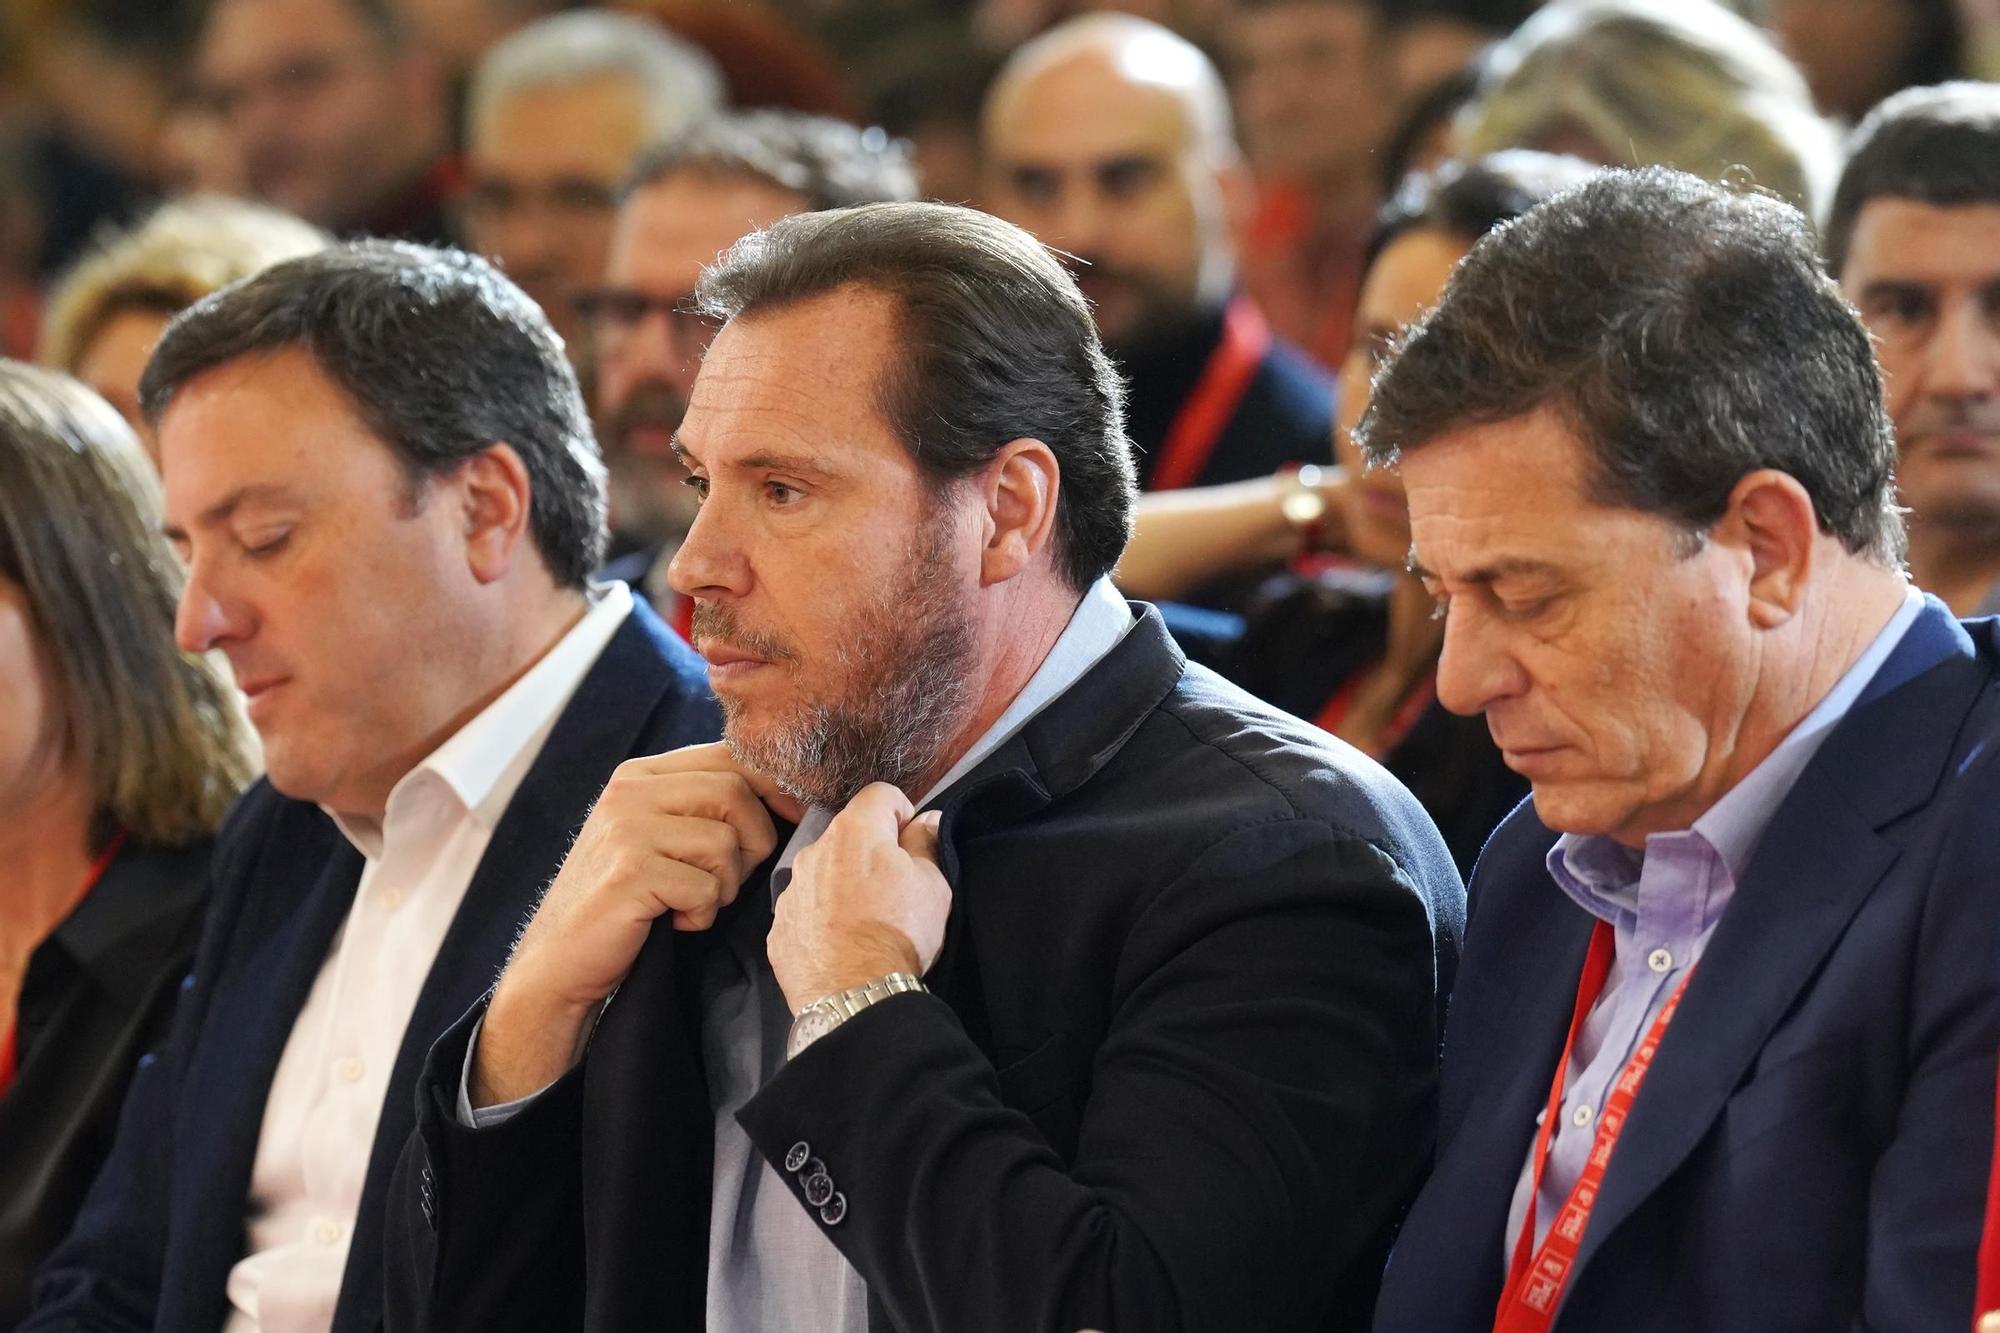 Santiago alberga el Congreso Extraordinario del PSdeG